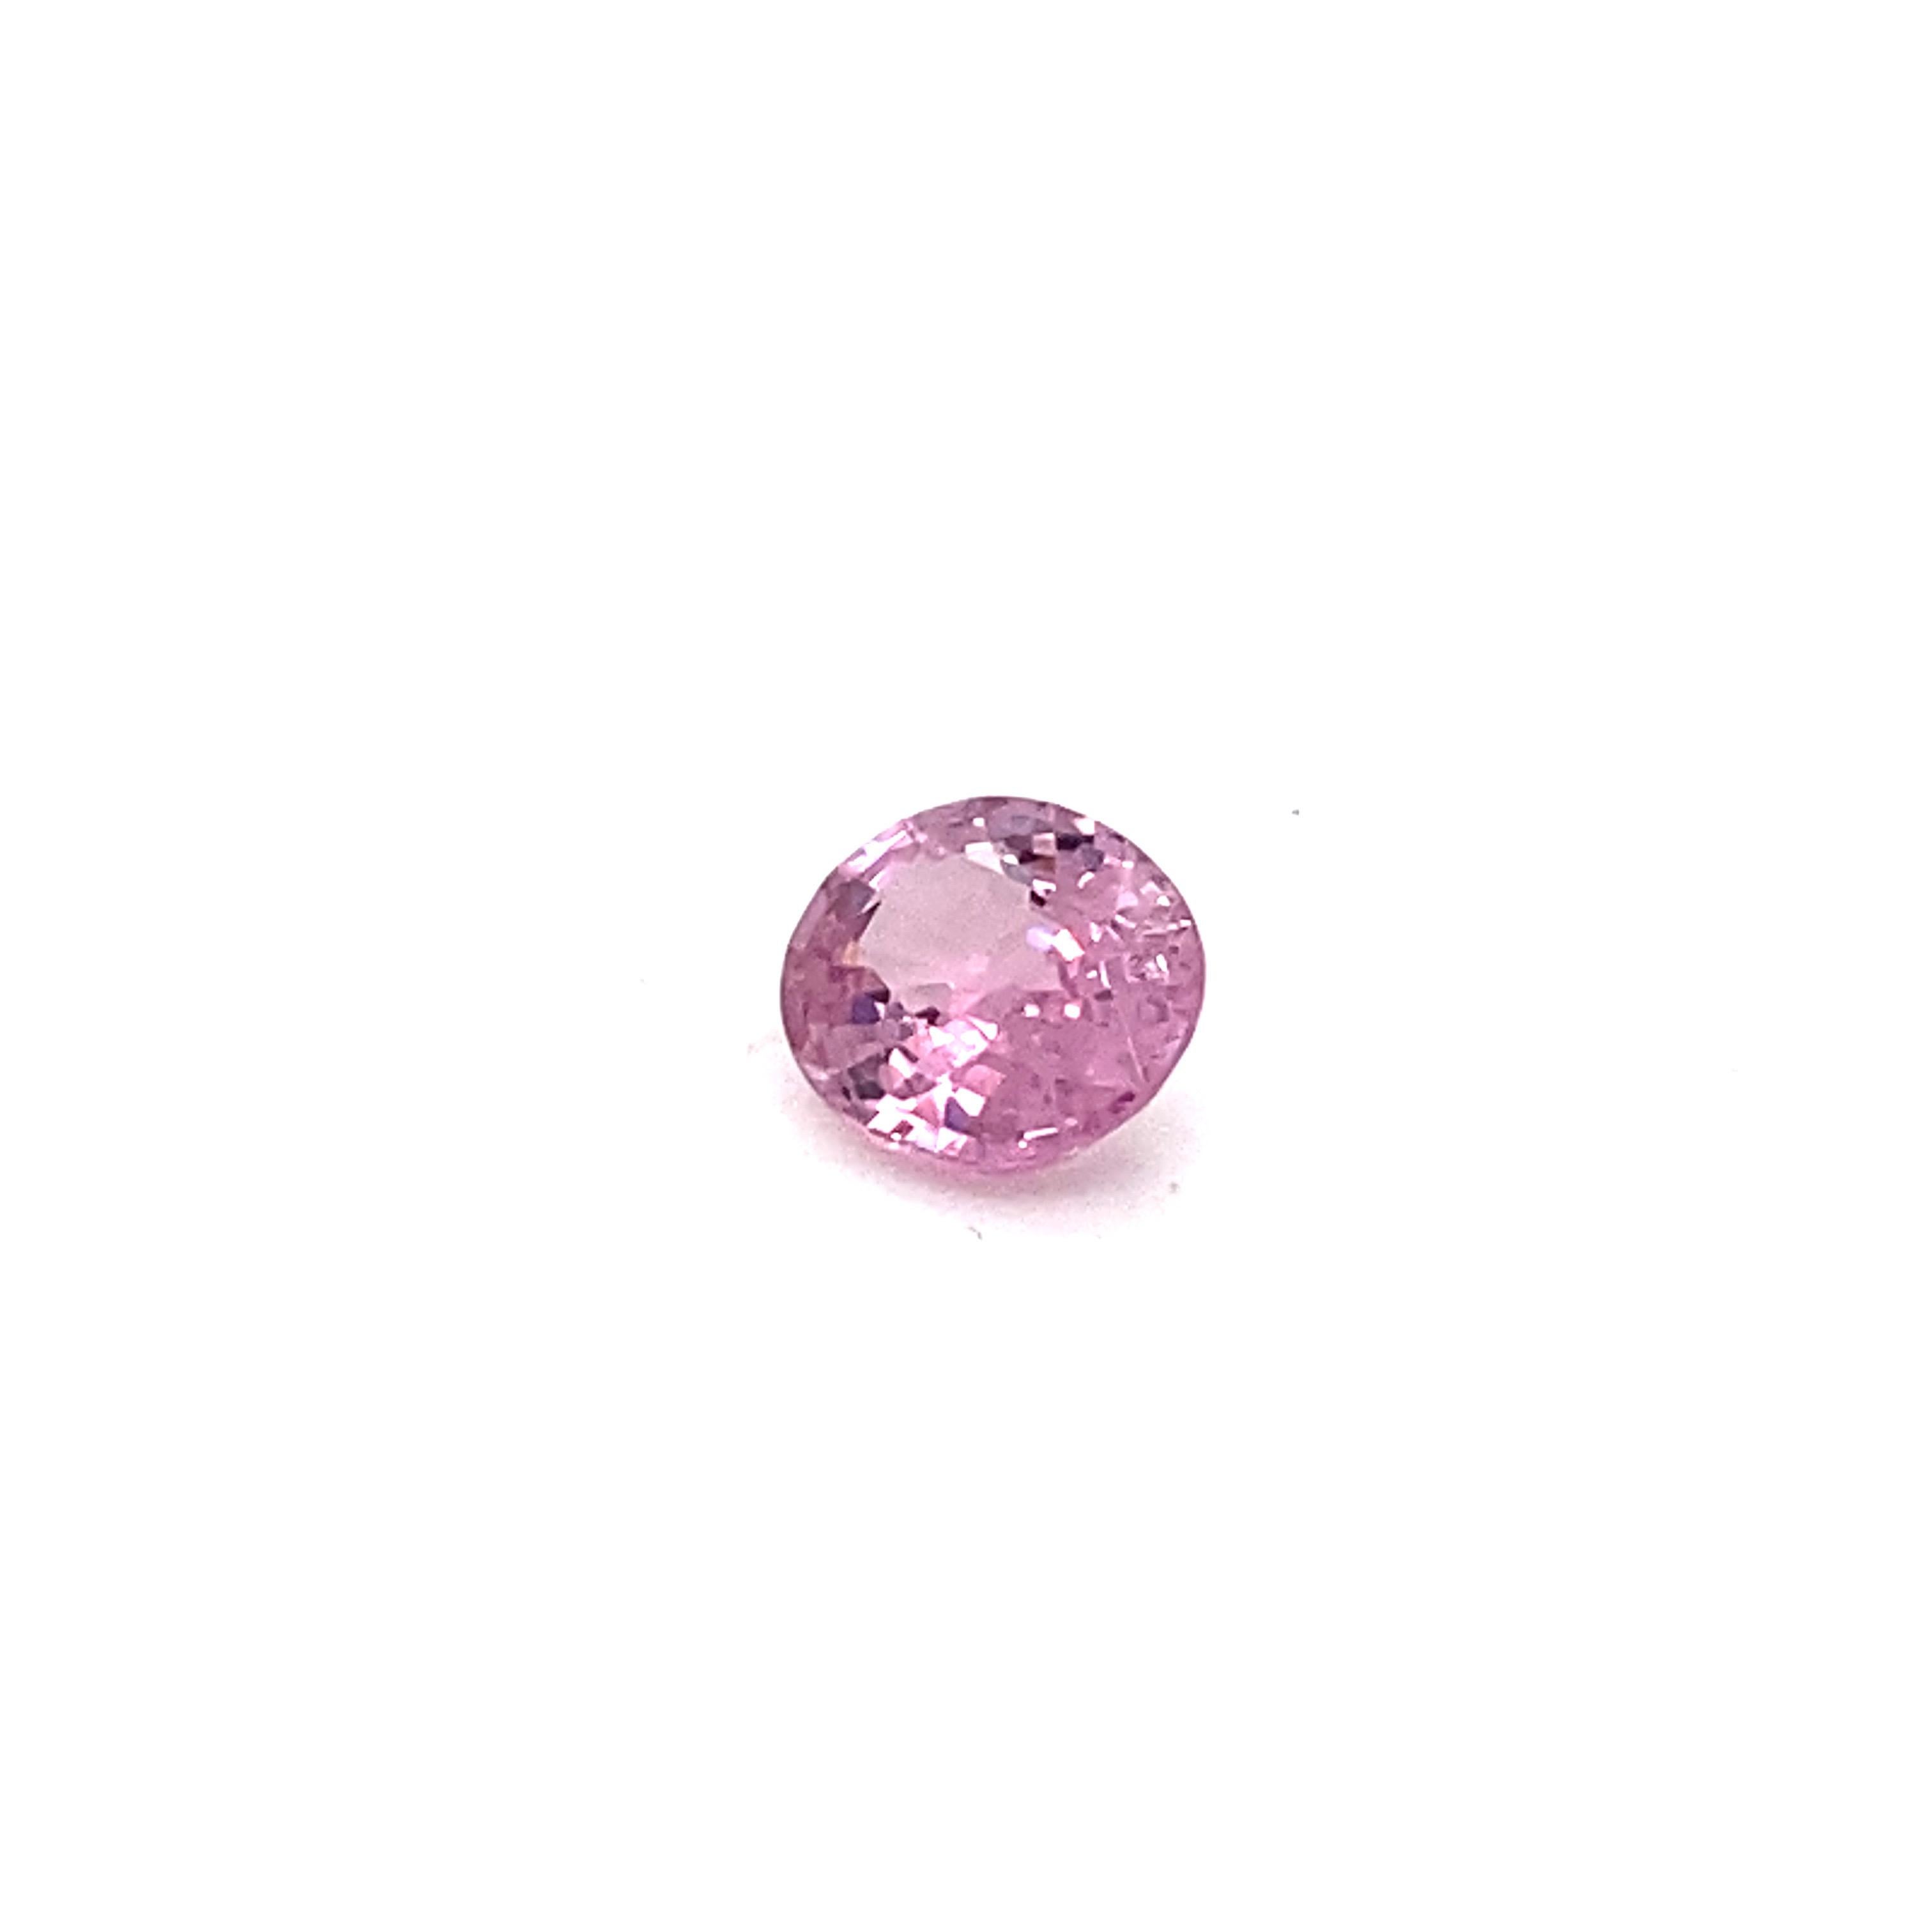 2.0 Carat Oval Shape Natural Pink Spinel Loose Gemstone For Sale 5